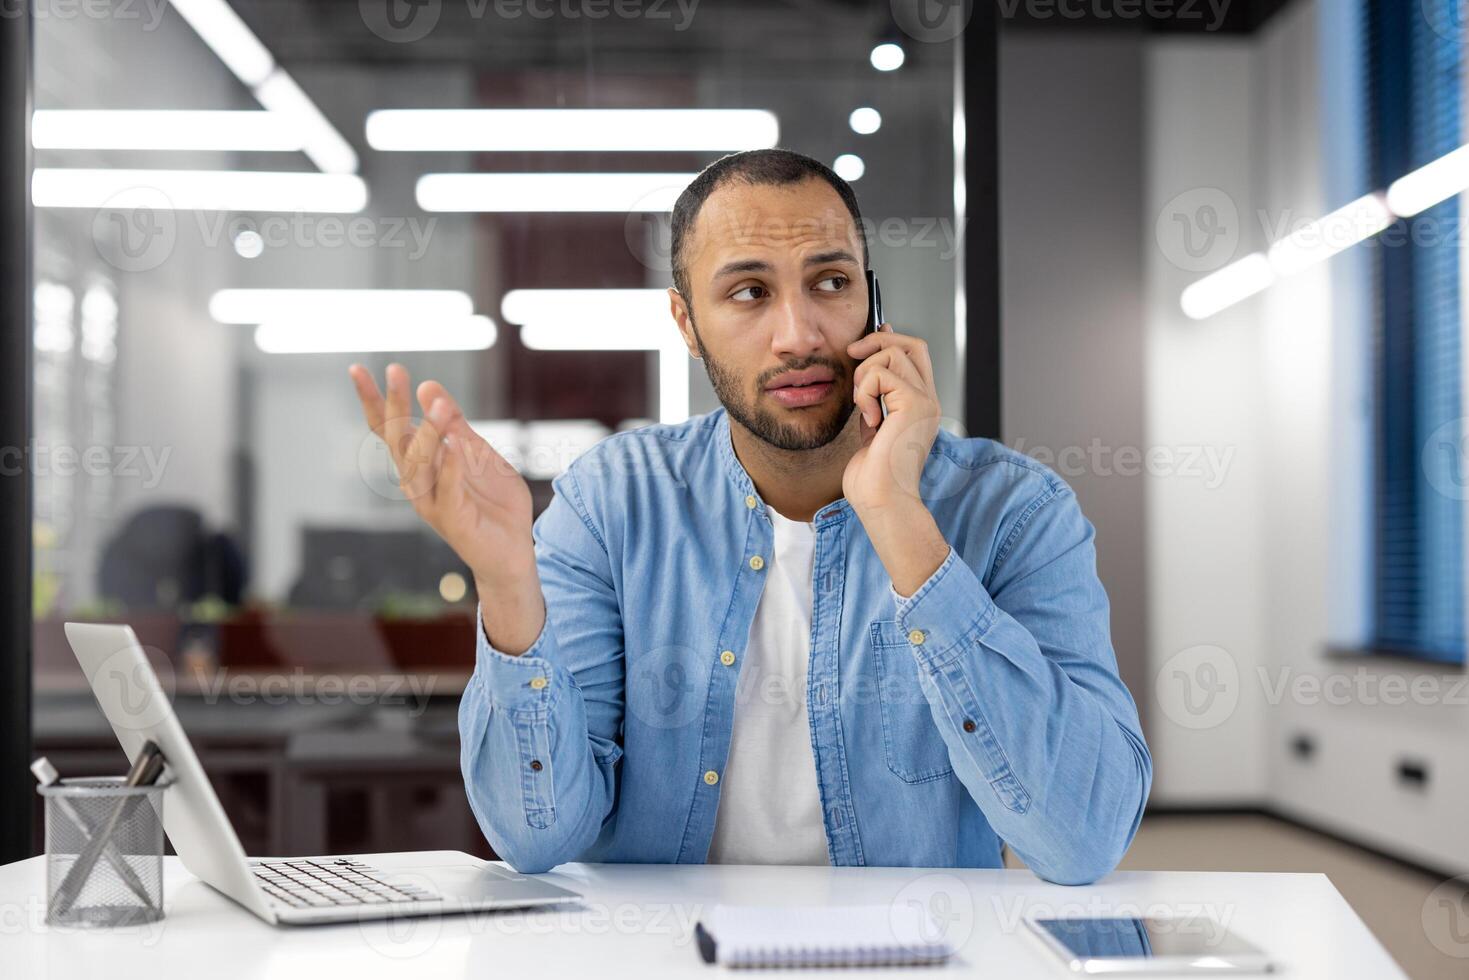 une homme est parlant sur le sien cellule téléphone tandis que séance à une bureau. il est portant une bleu chemise et il est dans une sérieux ambiance photo